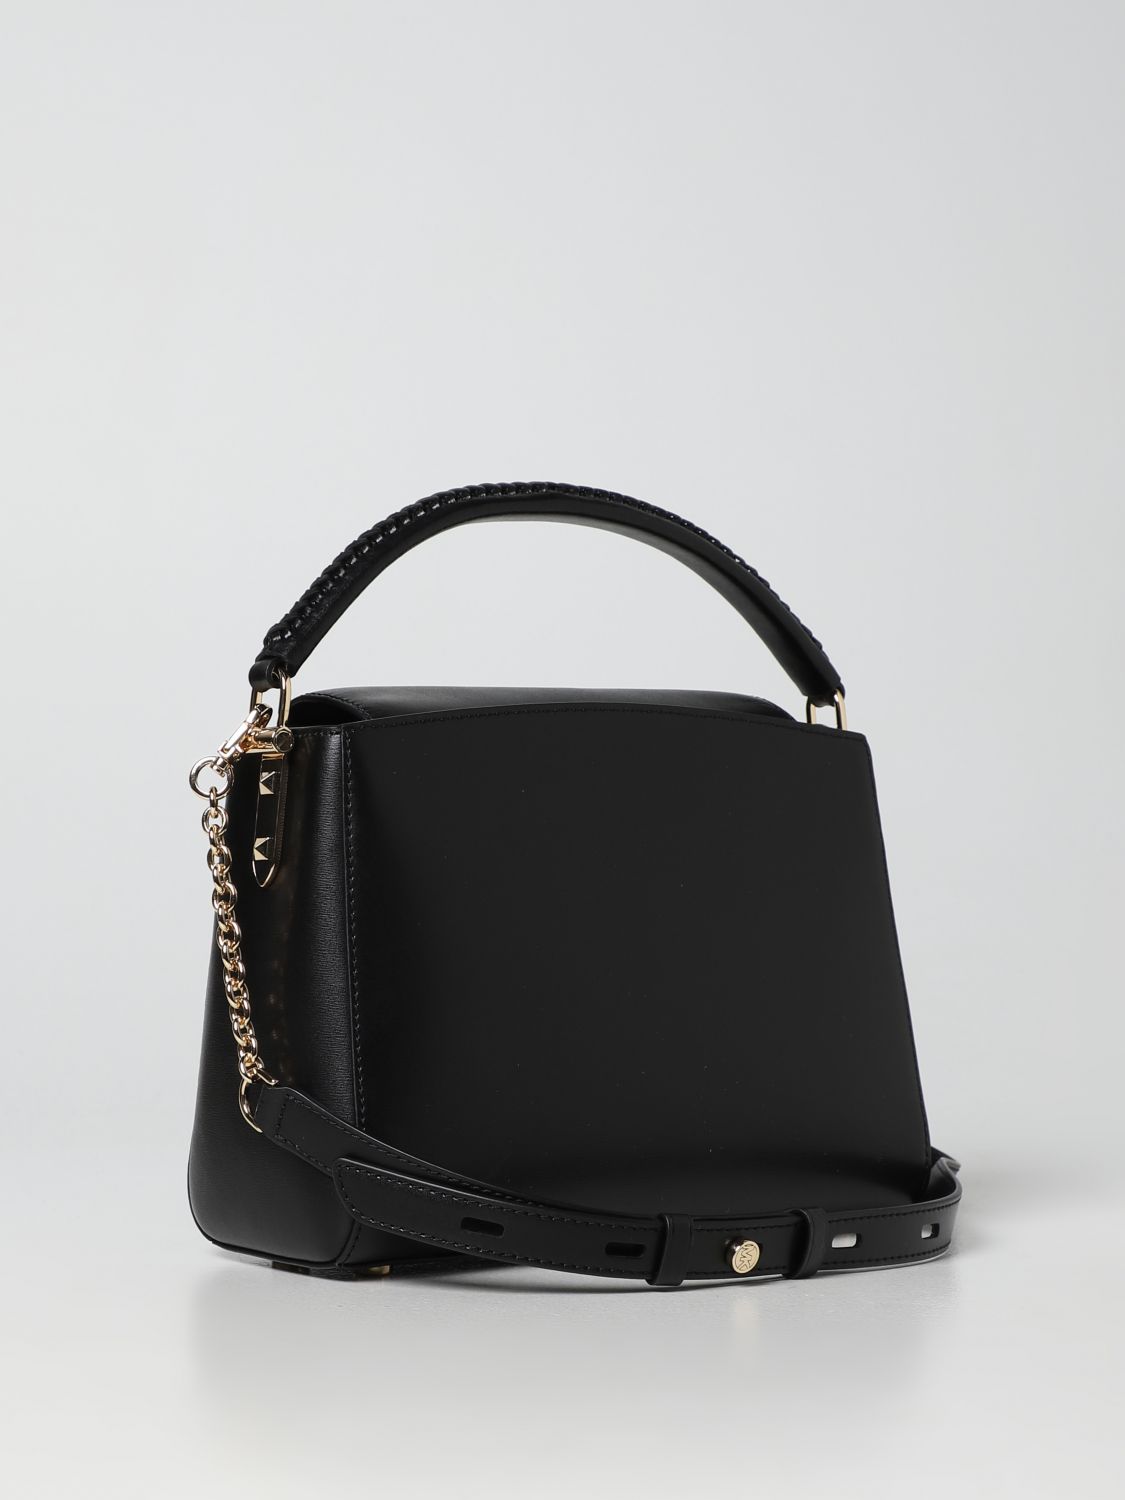 MICHAEL KORS: handbag for woman - Black | Michael Kors handbag ...